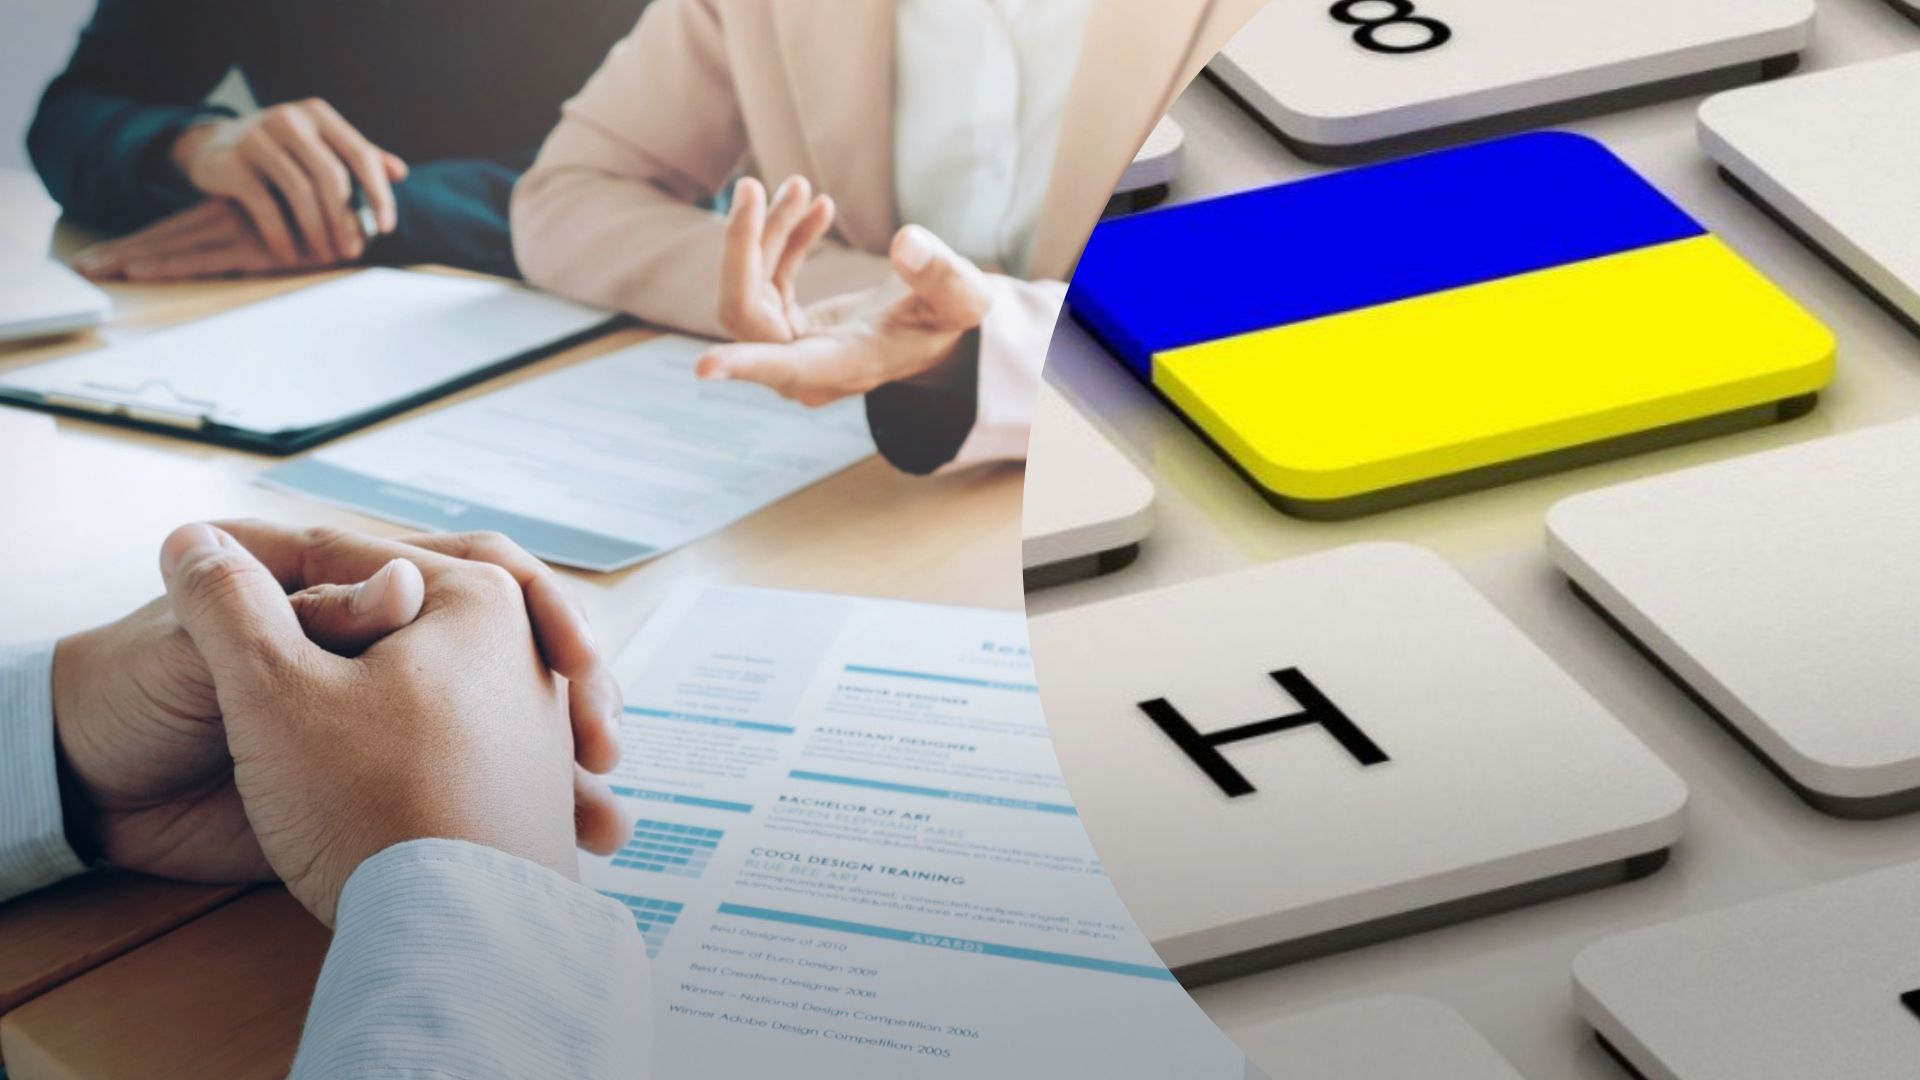 Мовний скандал у Києві - відмовили у співбесіді через прохання говорити українською